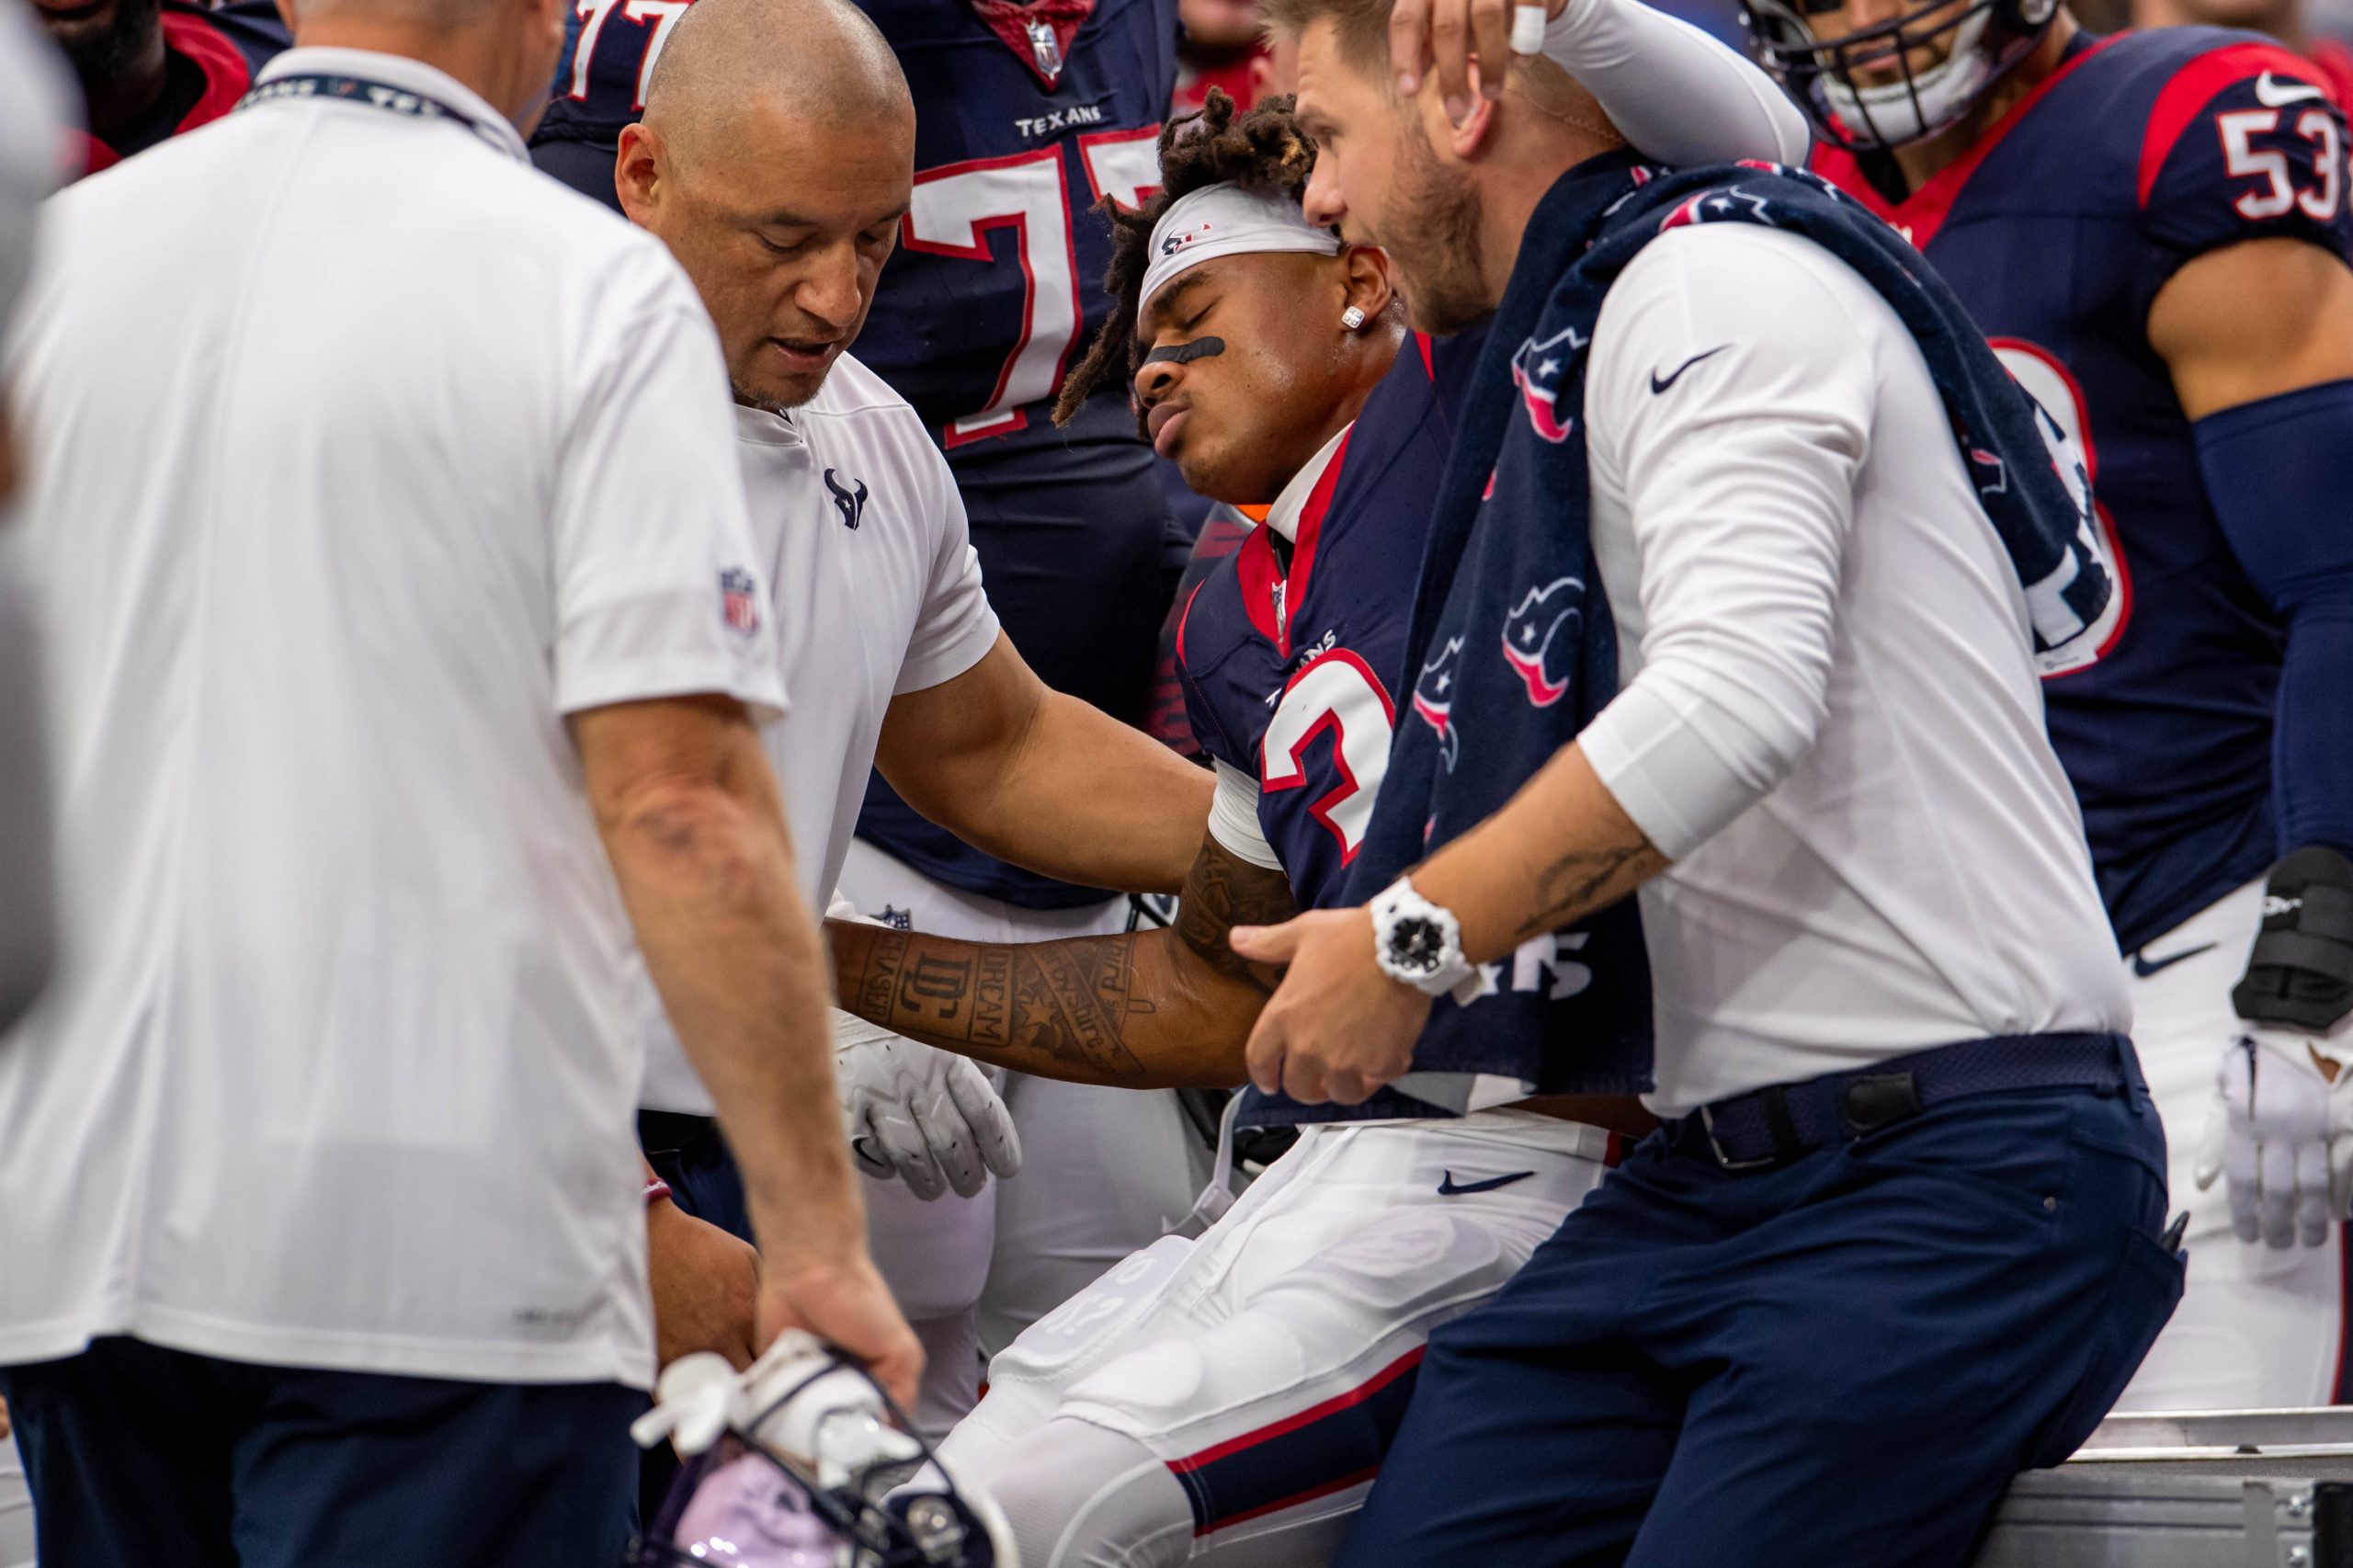 FootballR - NFL - Tank Dell - Einem Spieler der Houston Texans wird vom Feld geholfen, nachdem er einen schweren Rückschlag, insbesondere einen Wadenbeinbruch, erlitten hat.